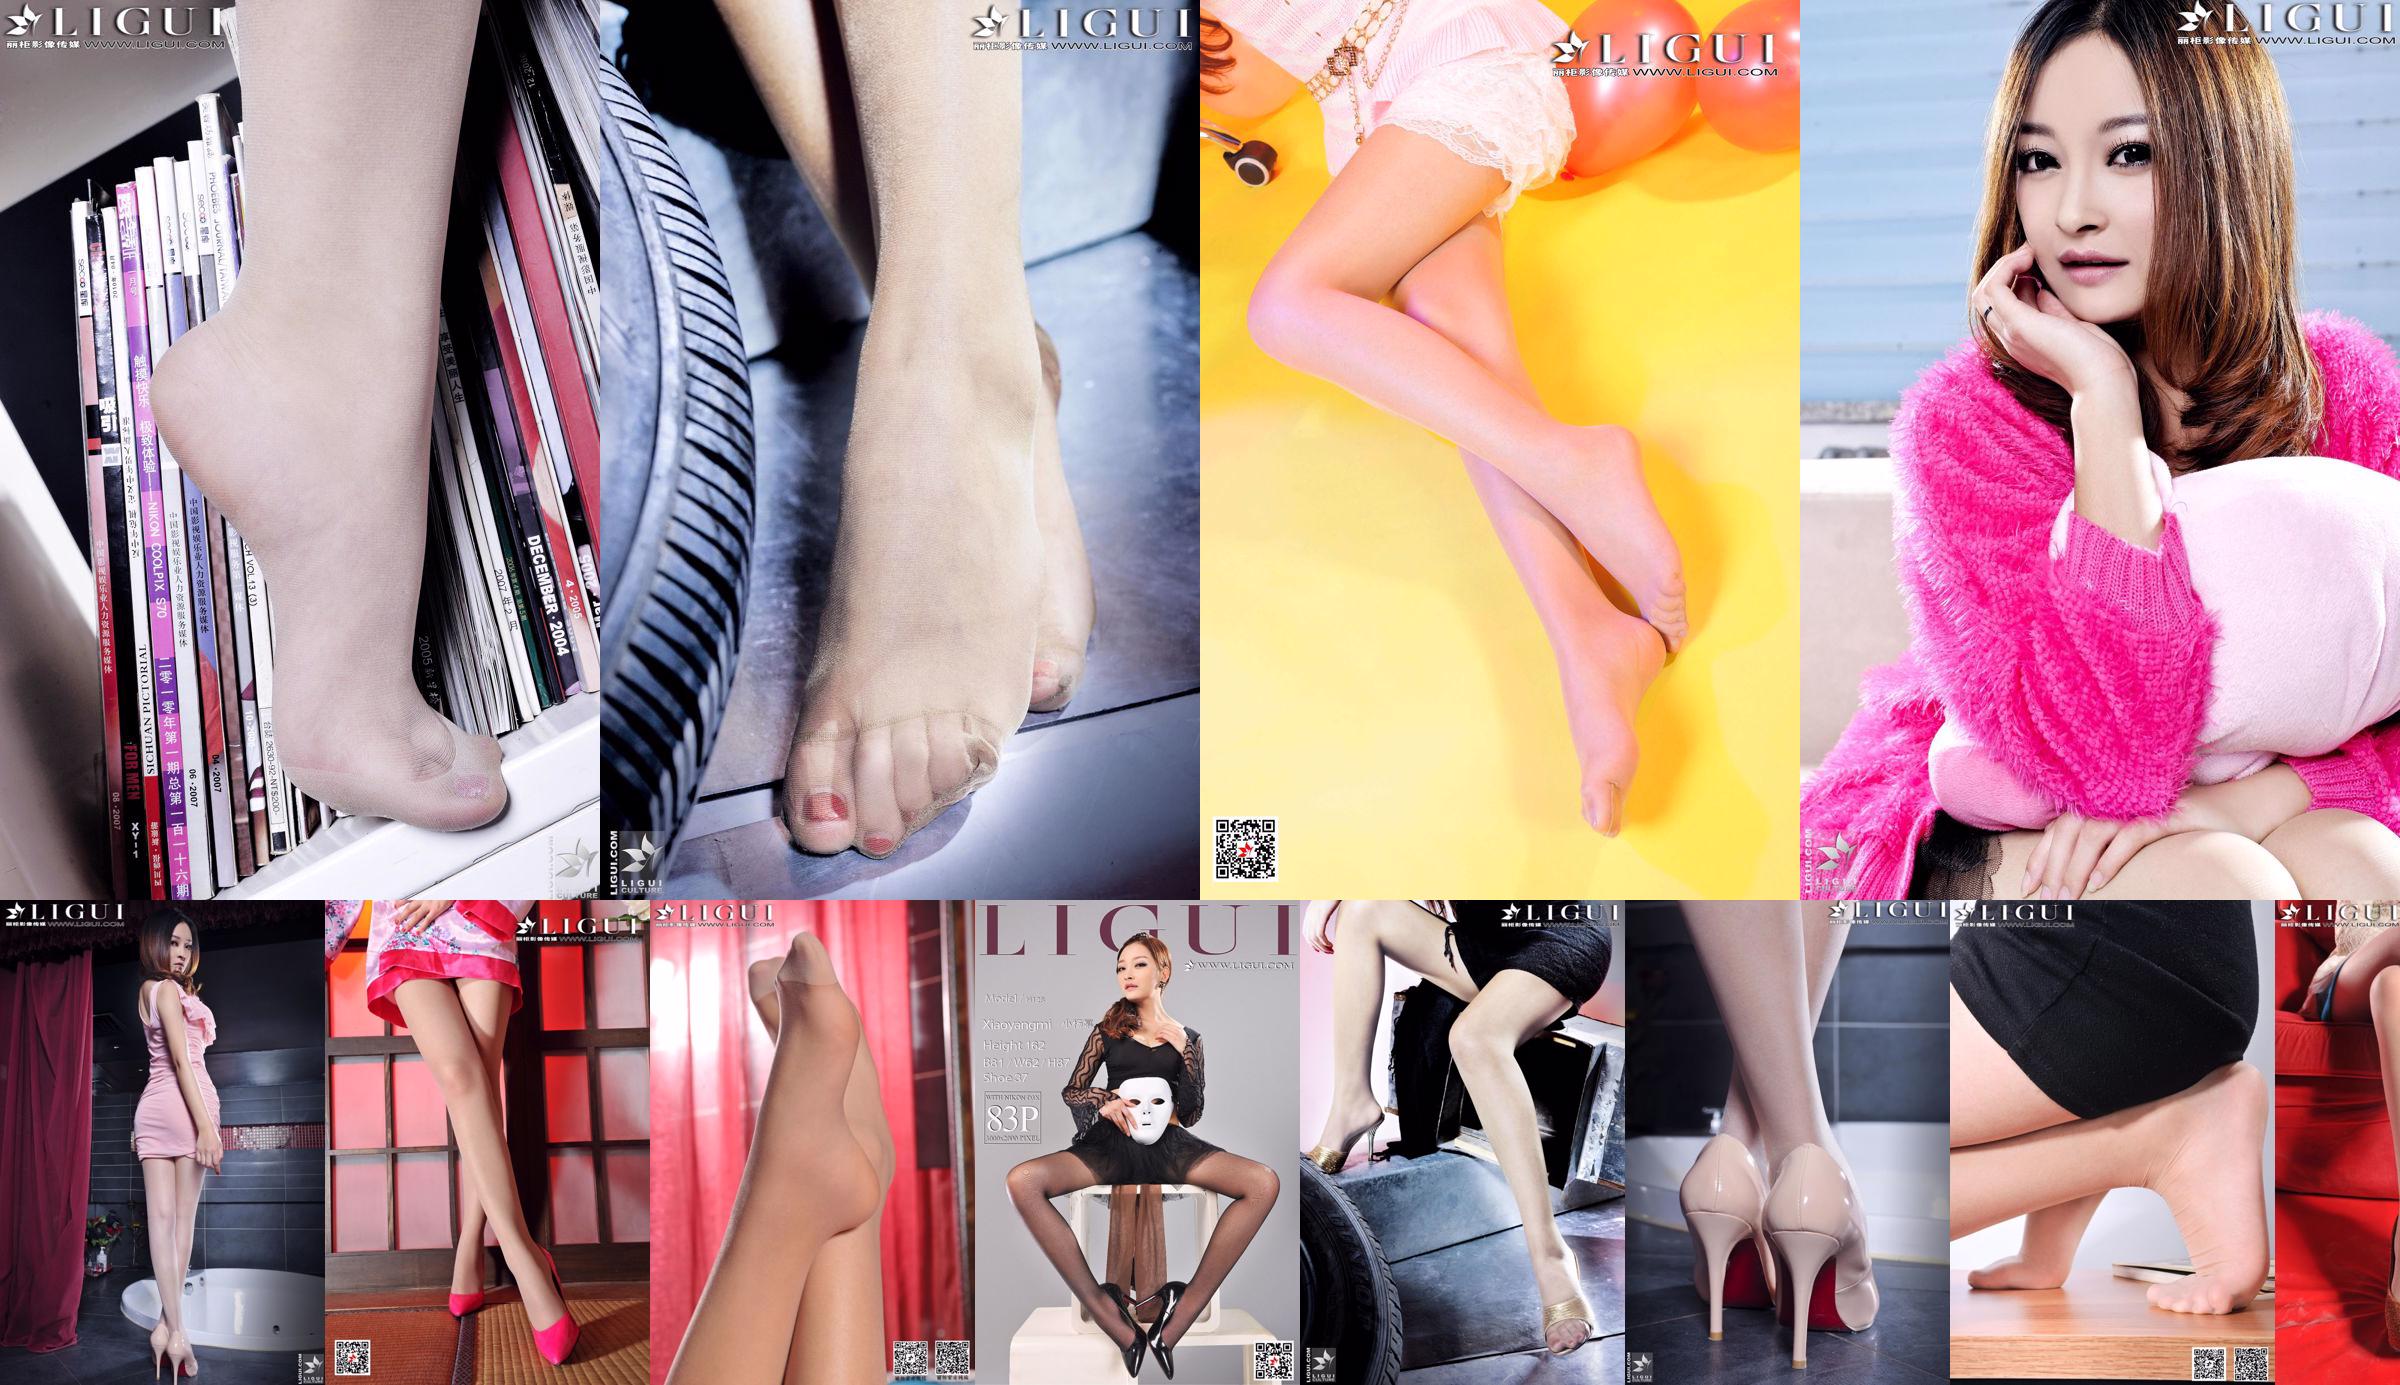 [丽 柜 Ligui] Model Xiao Yang Mi "Ross and Jade Feet" No.b900ff Pagina 1